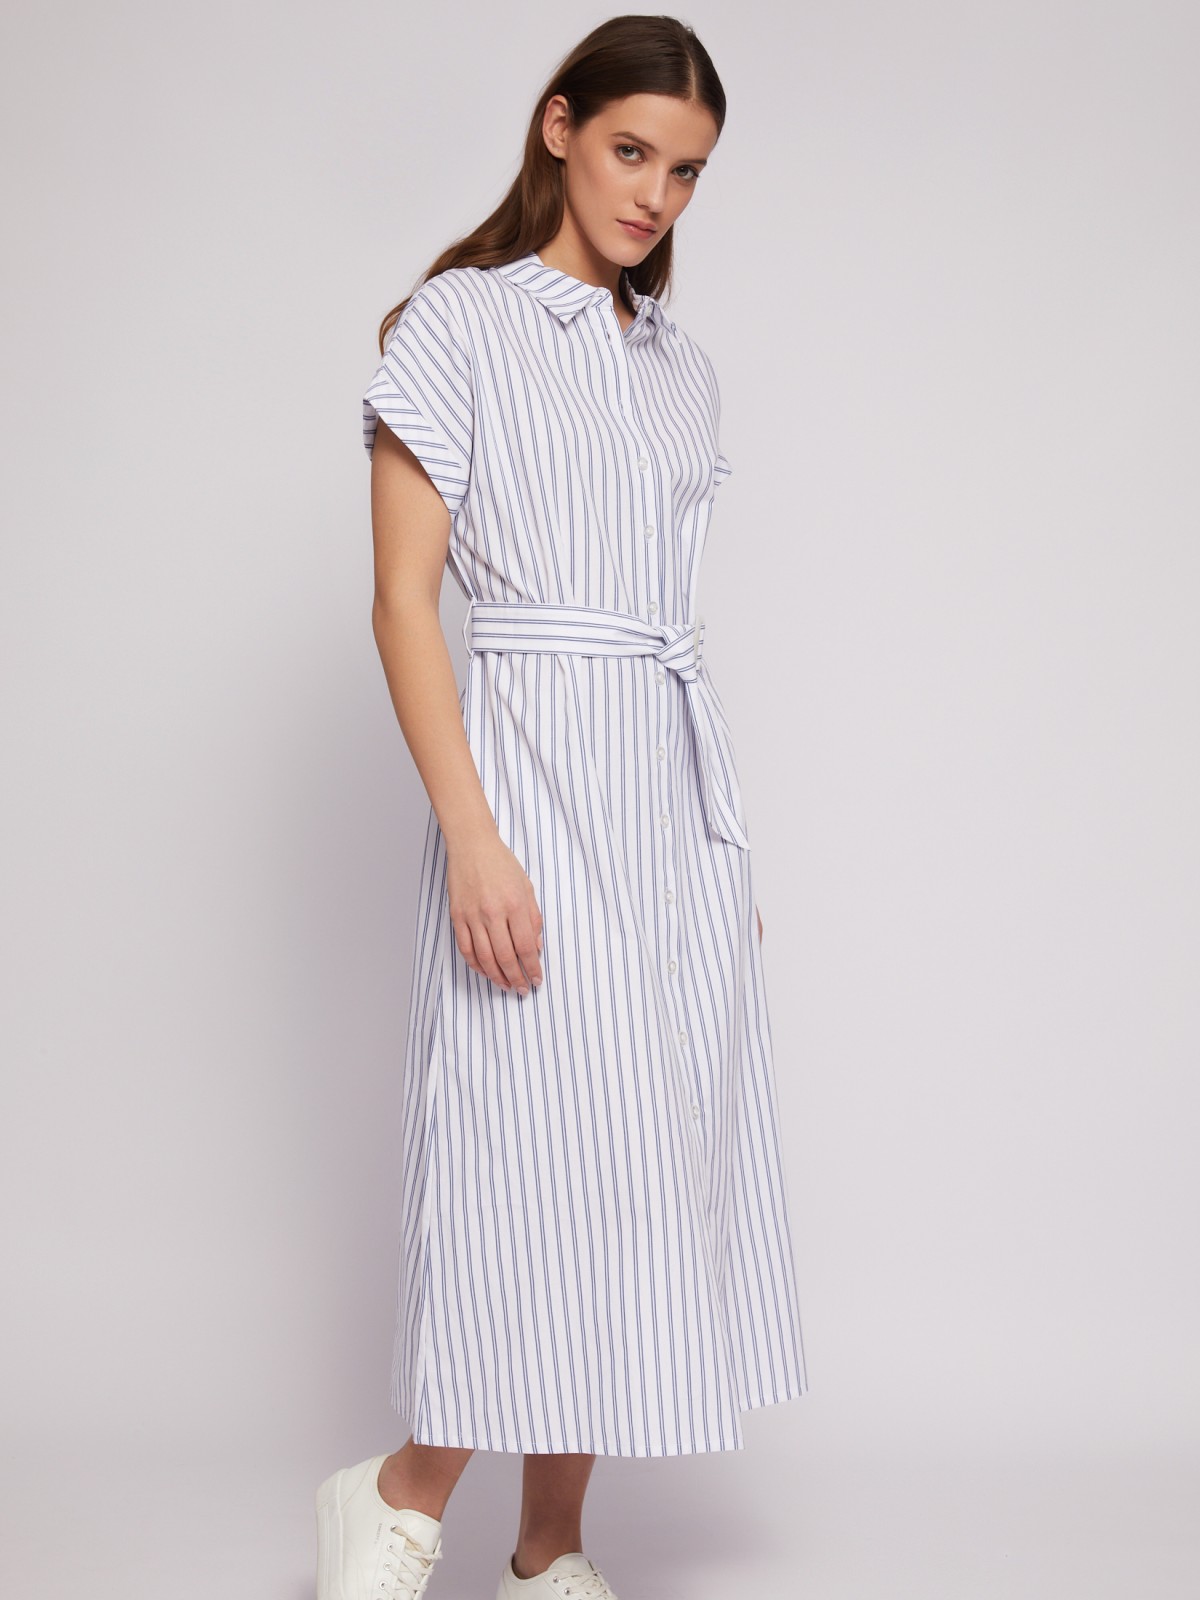 Платье-рубашка из хлопка с коротким рукавом и узором в полоску zolla 024218262363, цвет белый, размер S - фото 3